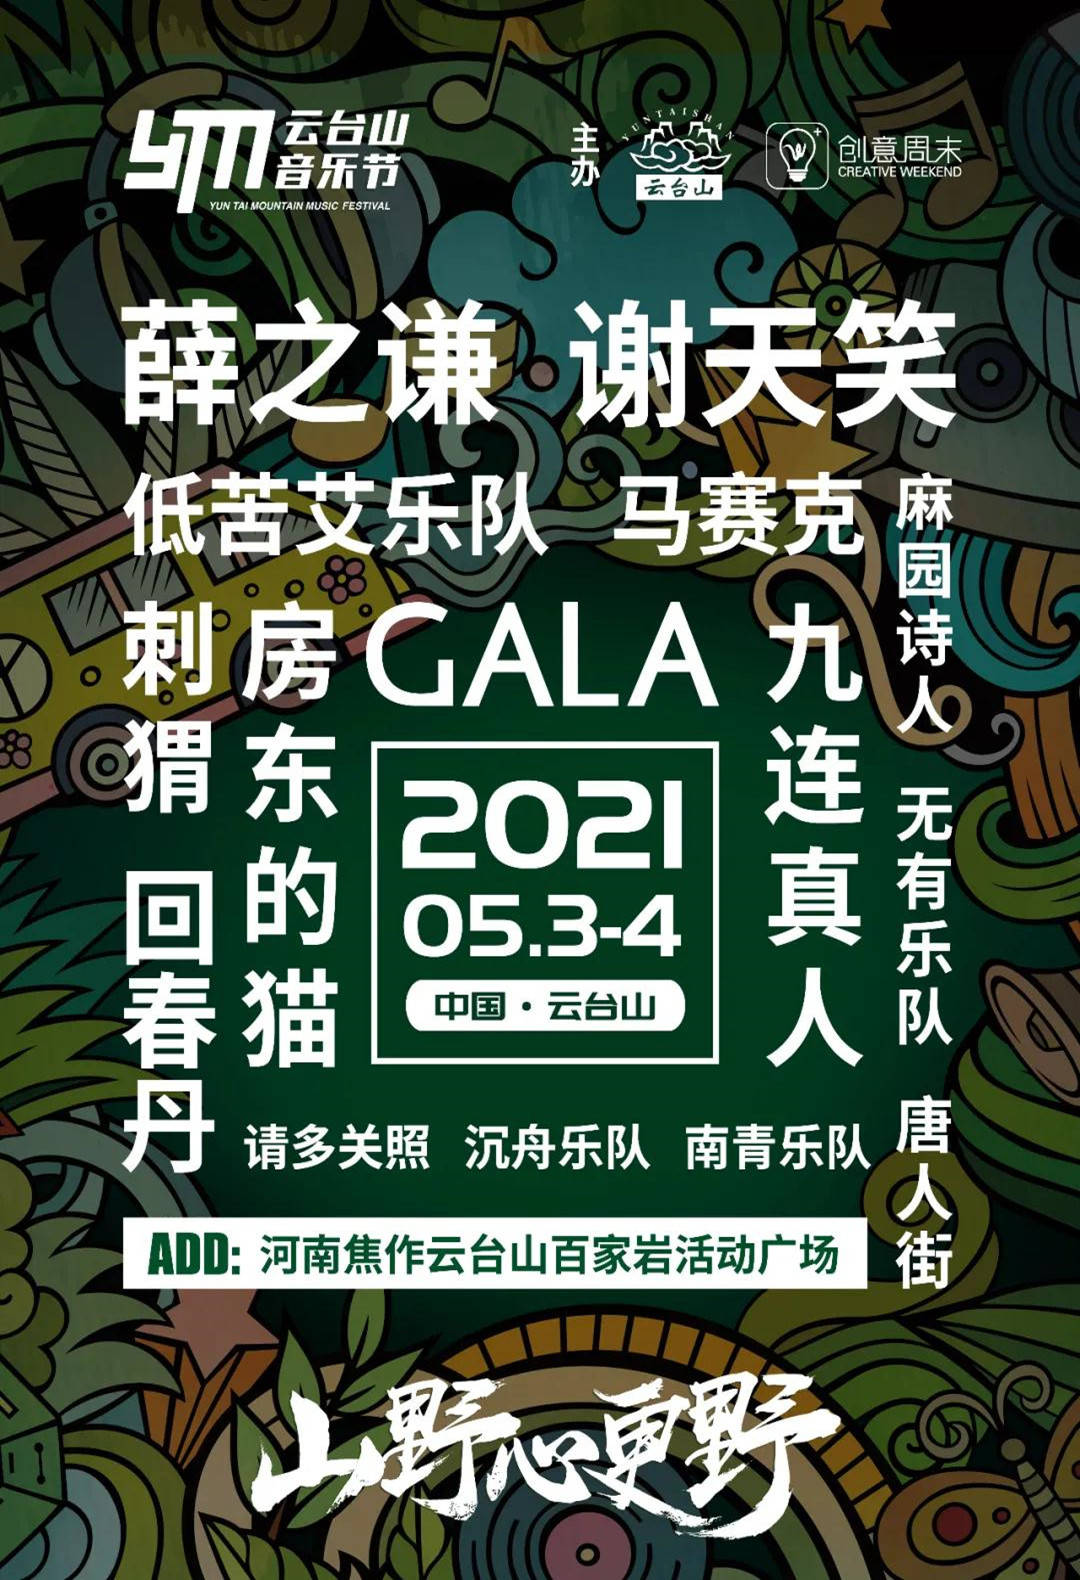 云台山音乐节2021是什么时候?演出时间表公布